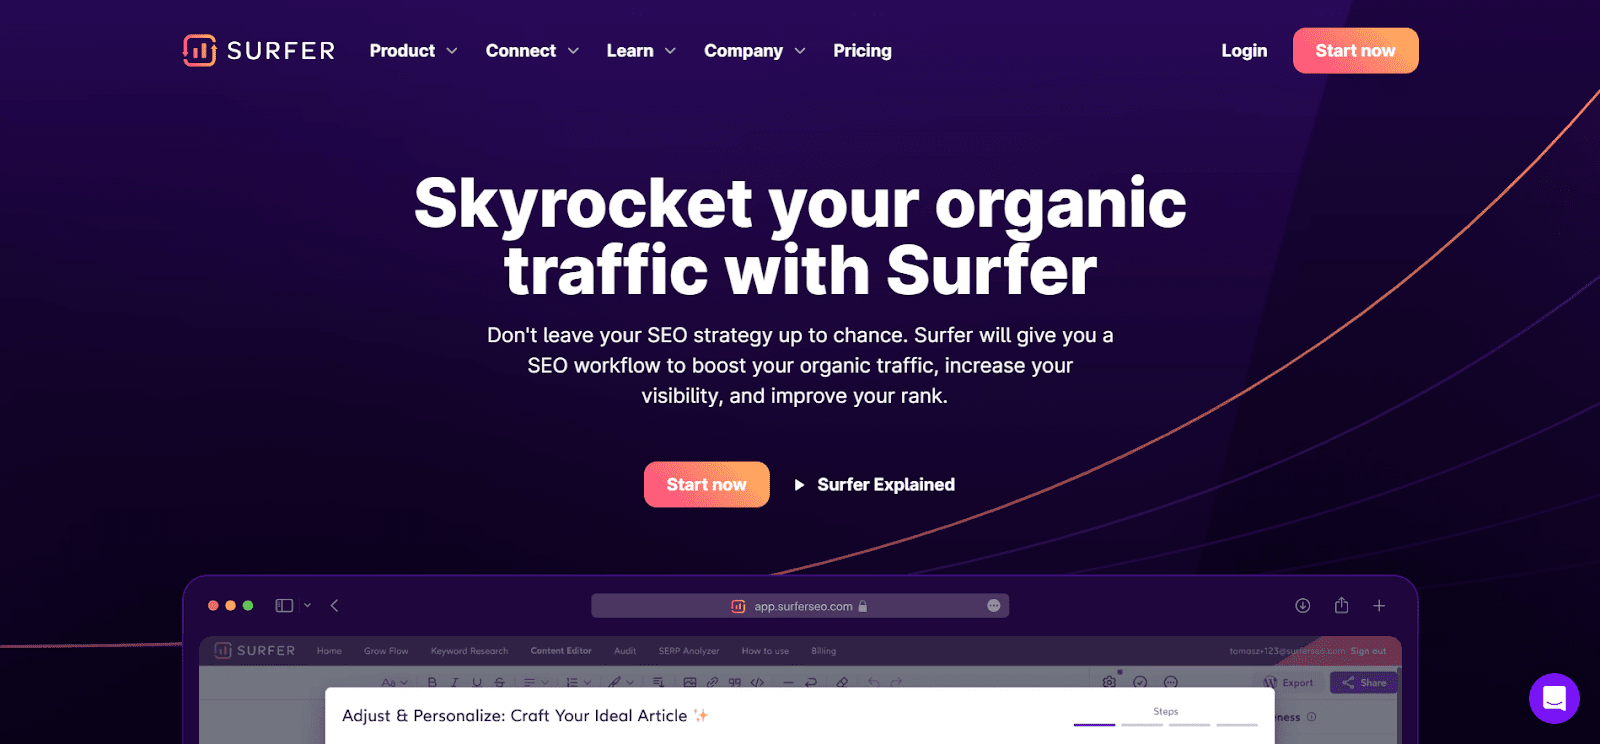 A screenshot of Surfer's website